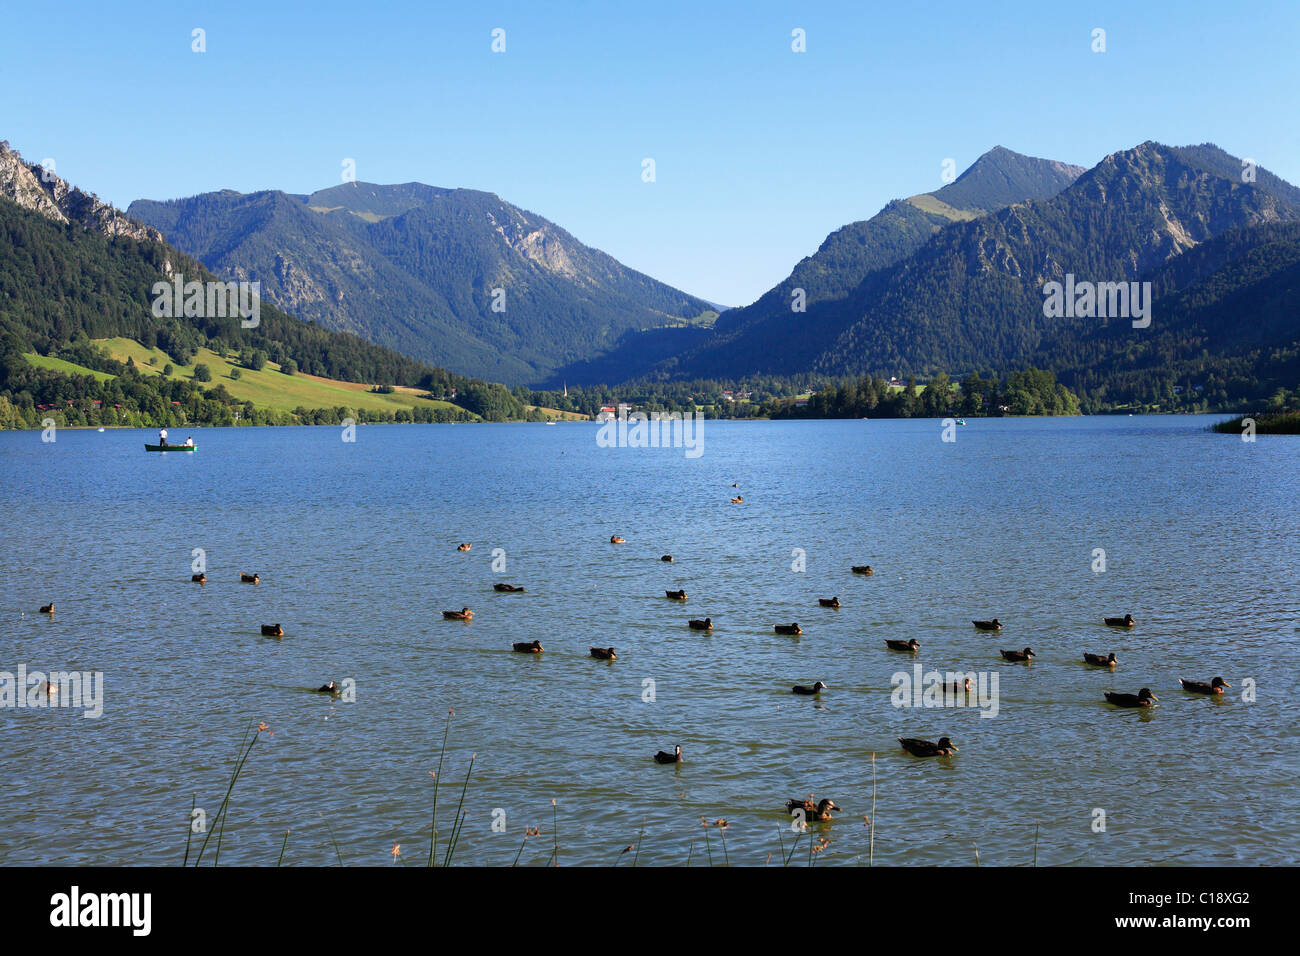 Des canards au lac de Schliersee, Mangfall montagnes avec Mt. Nagelspitz et Mt. Brecherspitz, Upper Bavaria, Germany, Europe Banque D'Images